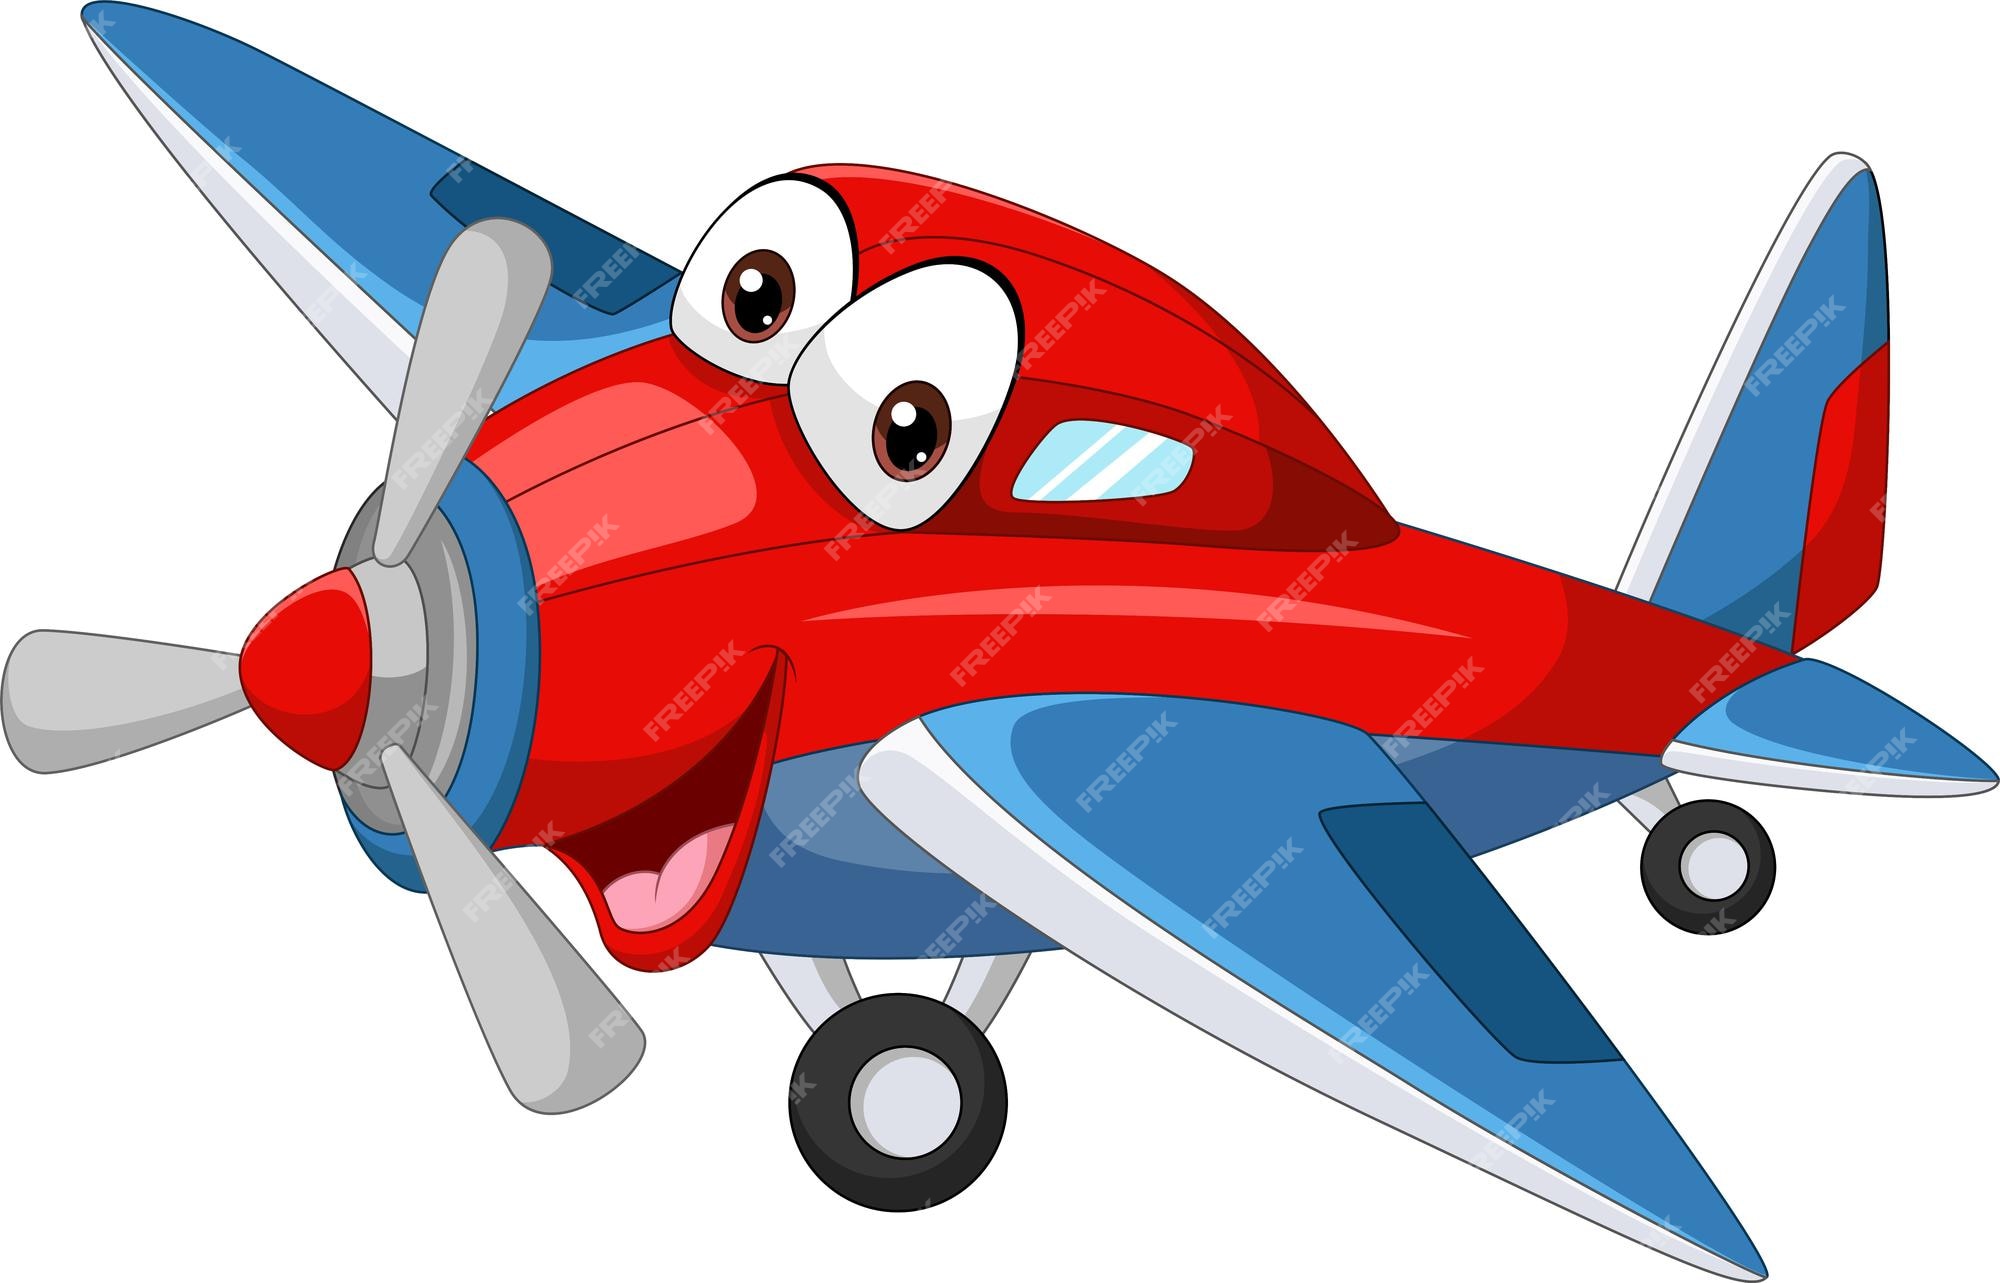 Airplane Cartoon Images - Free Download on Freepik